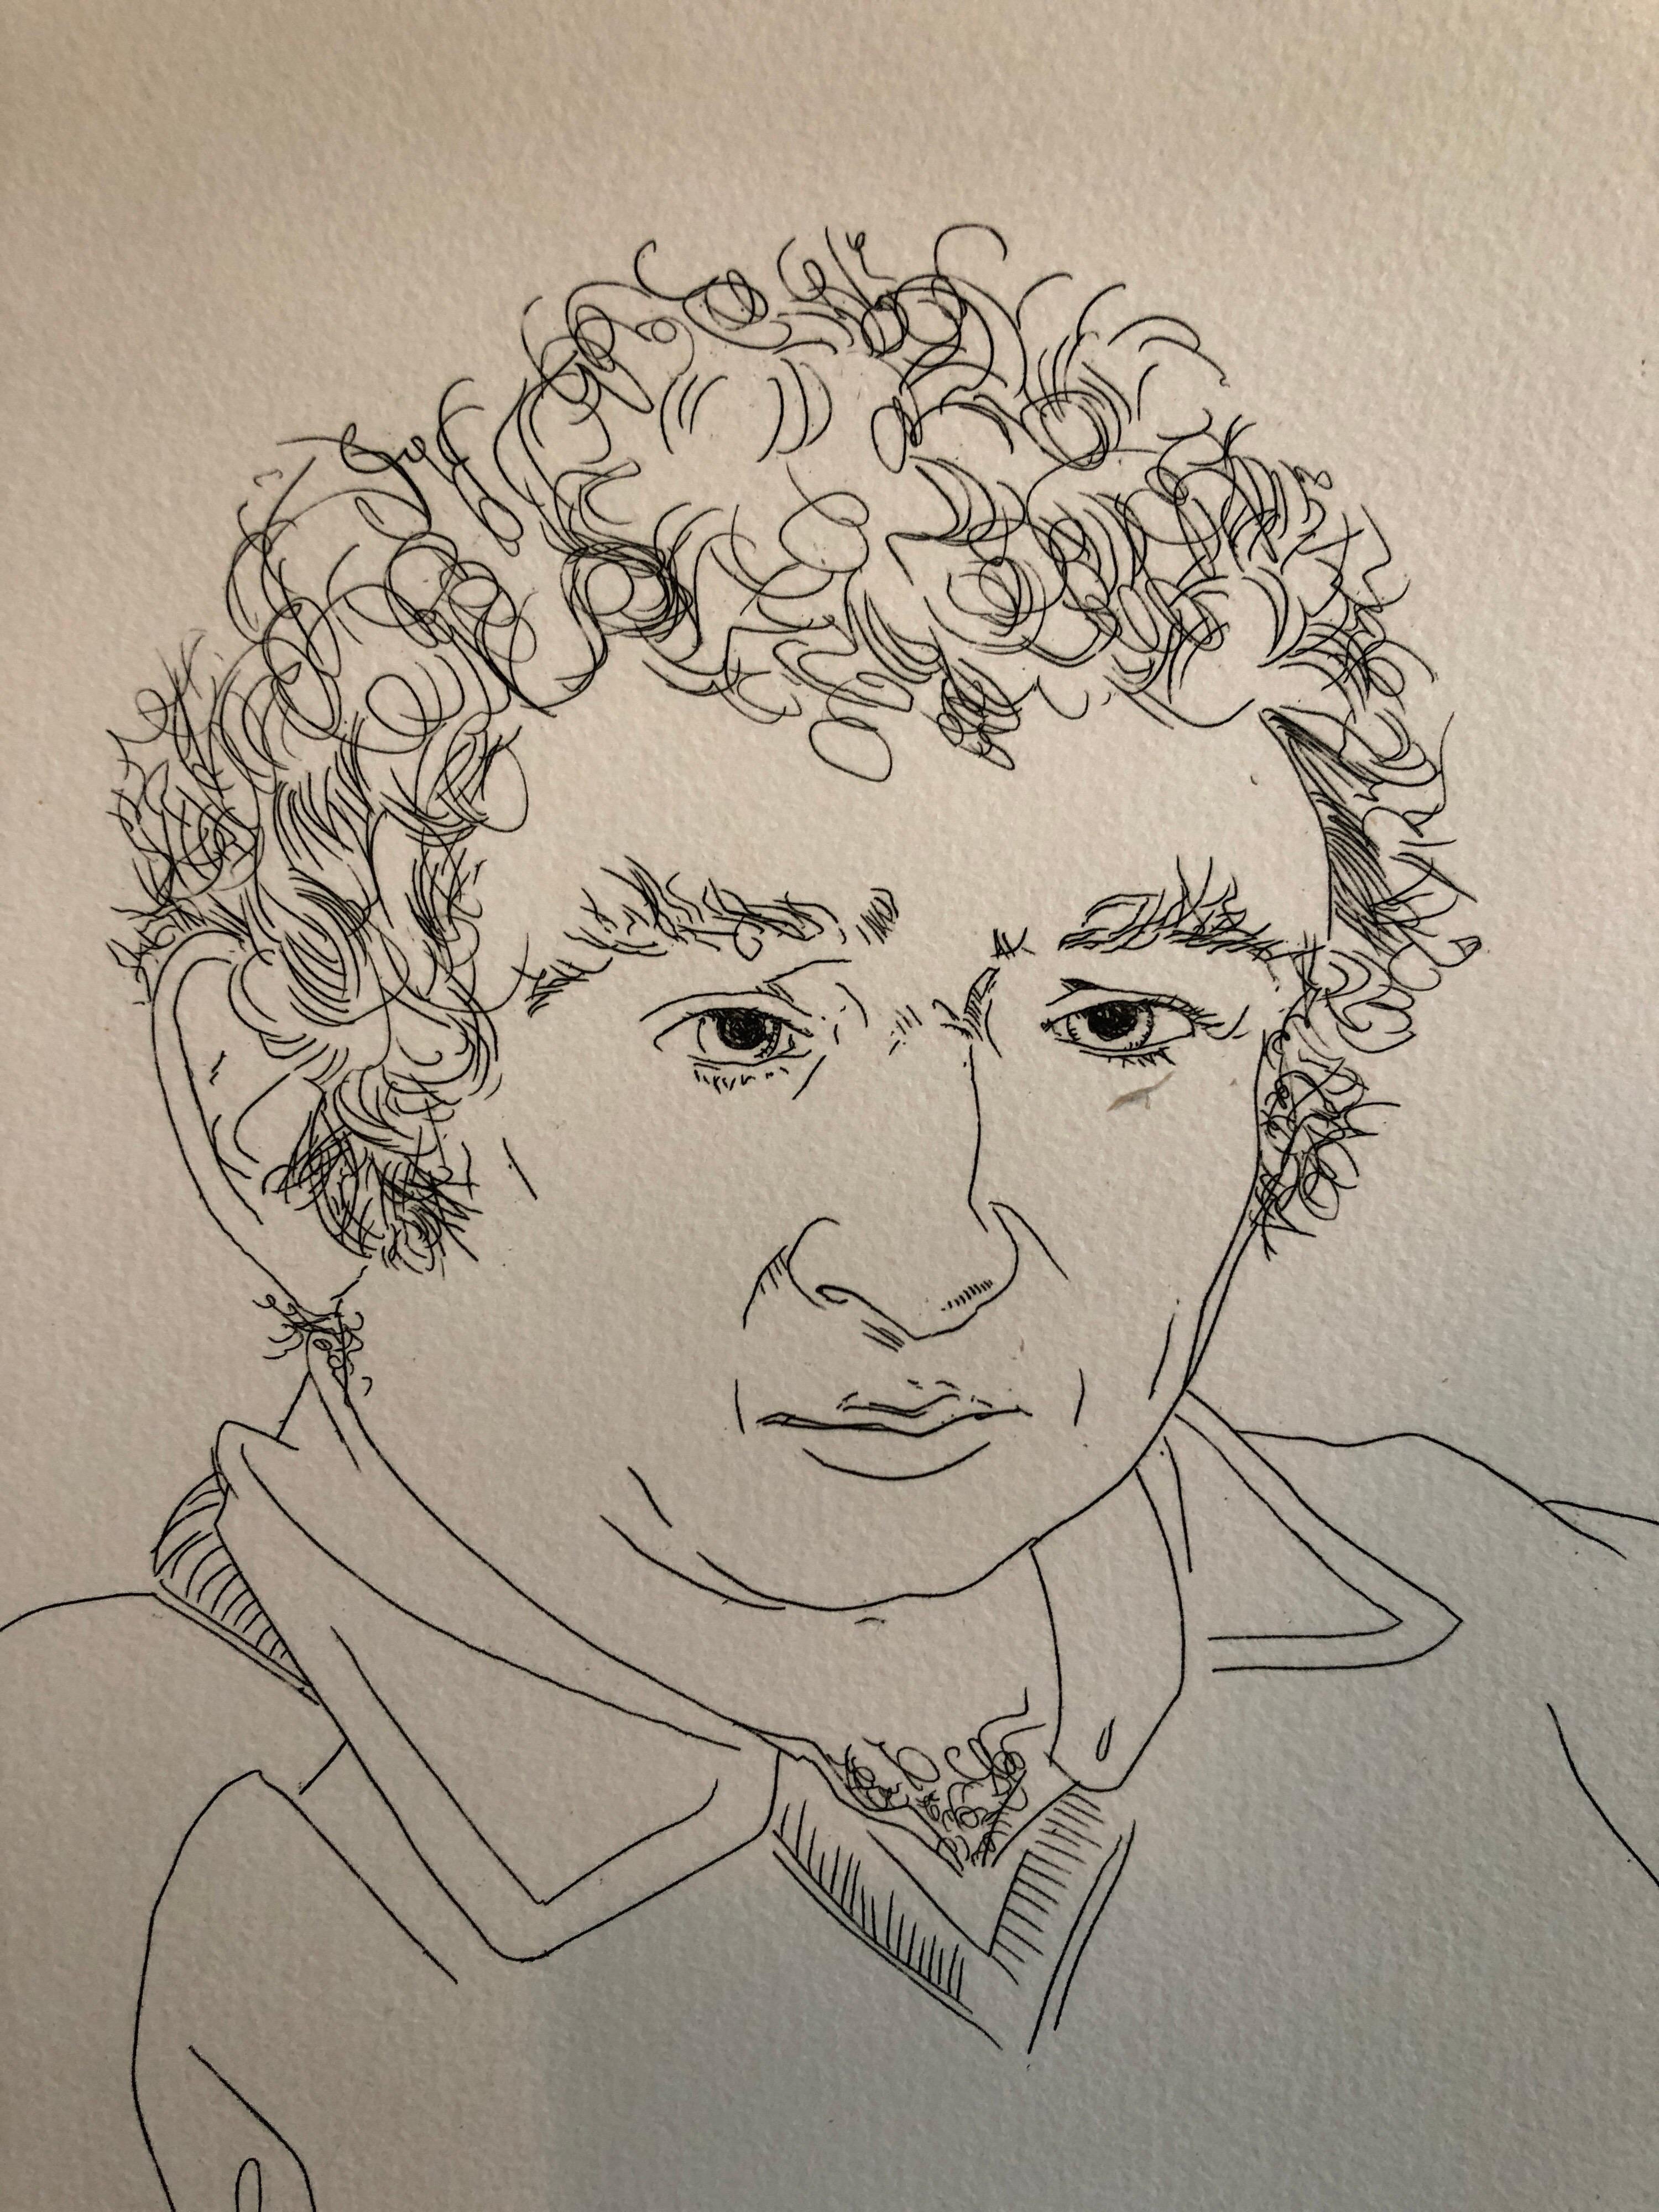 Portrait de Norman Mailer, lauréat du prix Pulitzer, gravure au trait - Print de Knox Martin